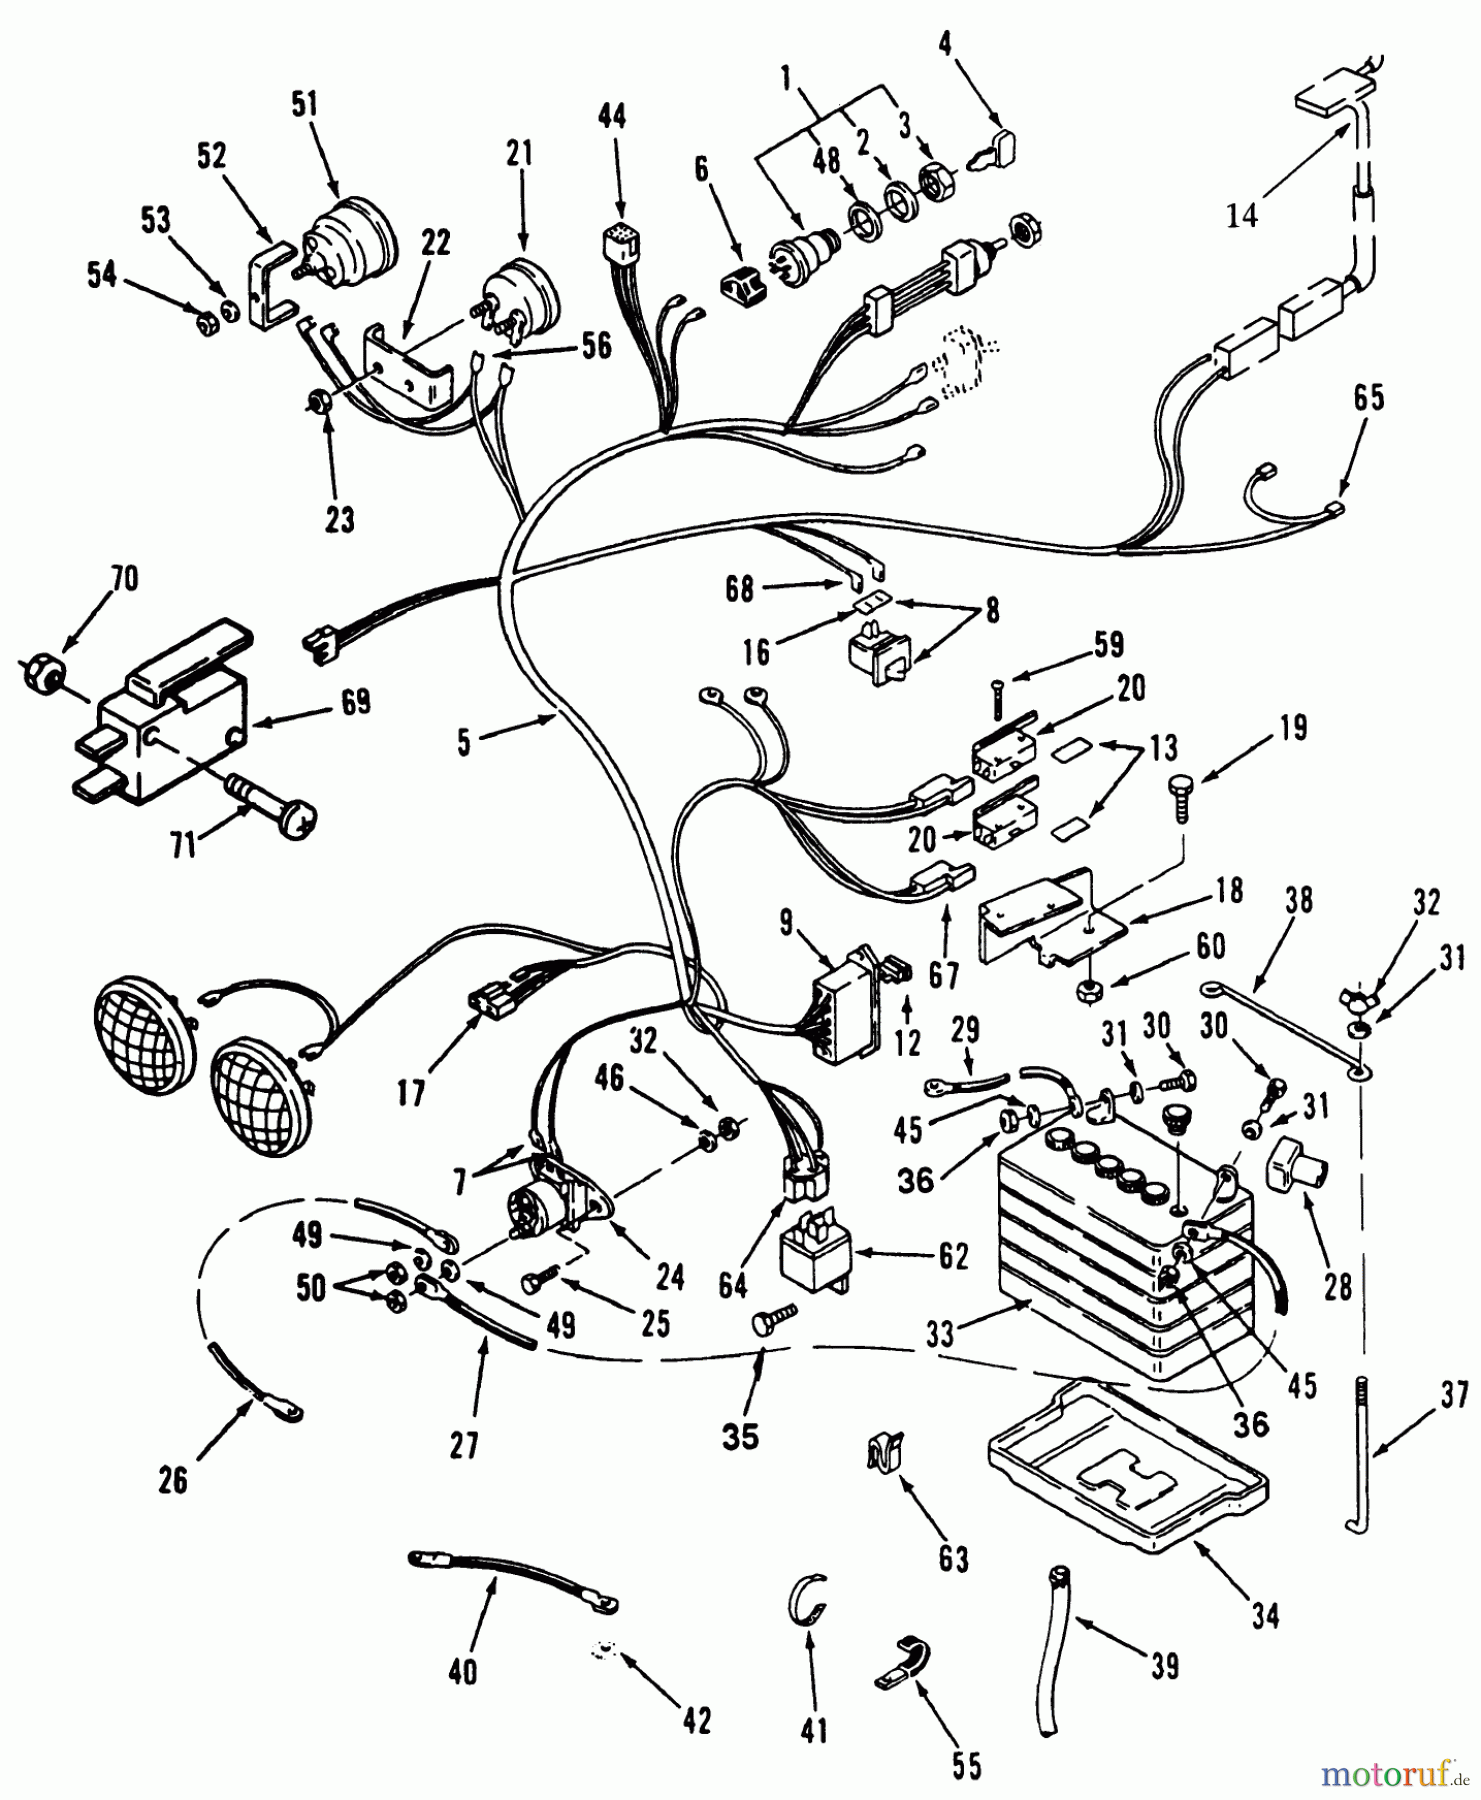  Toro Neu Mowers, Lawn & Garden Tractor Seite 1 31-16O804 (416-8) - Toro 416-8 Garden Tractor, 1992 (2000001-2999999) ELECTRICAL SYSTEM #1